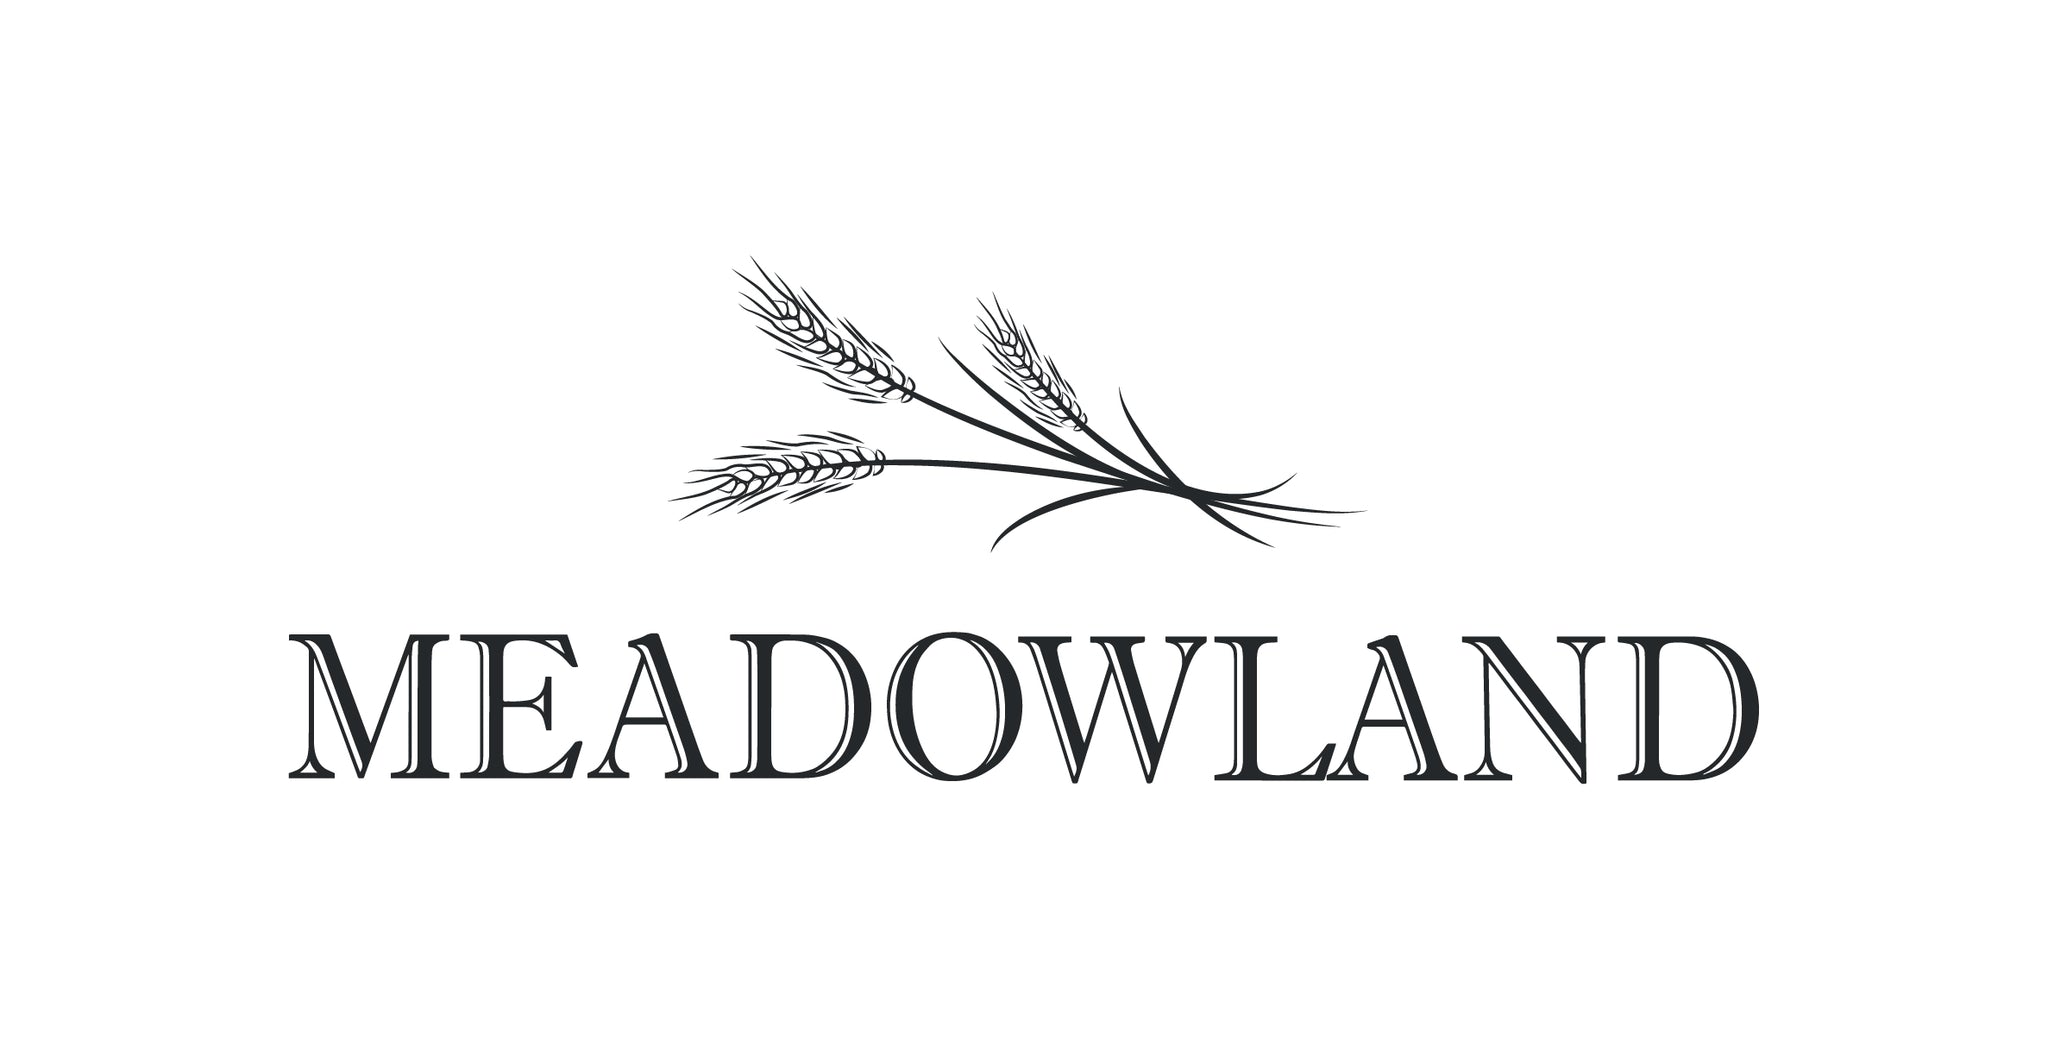 Meadowland - Drop 1